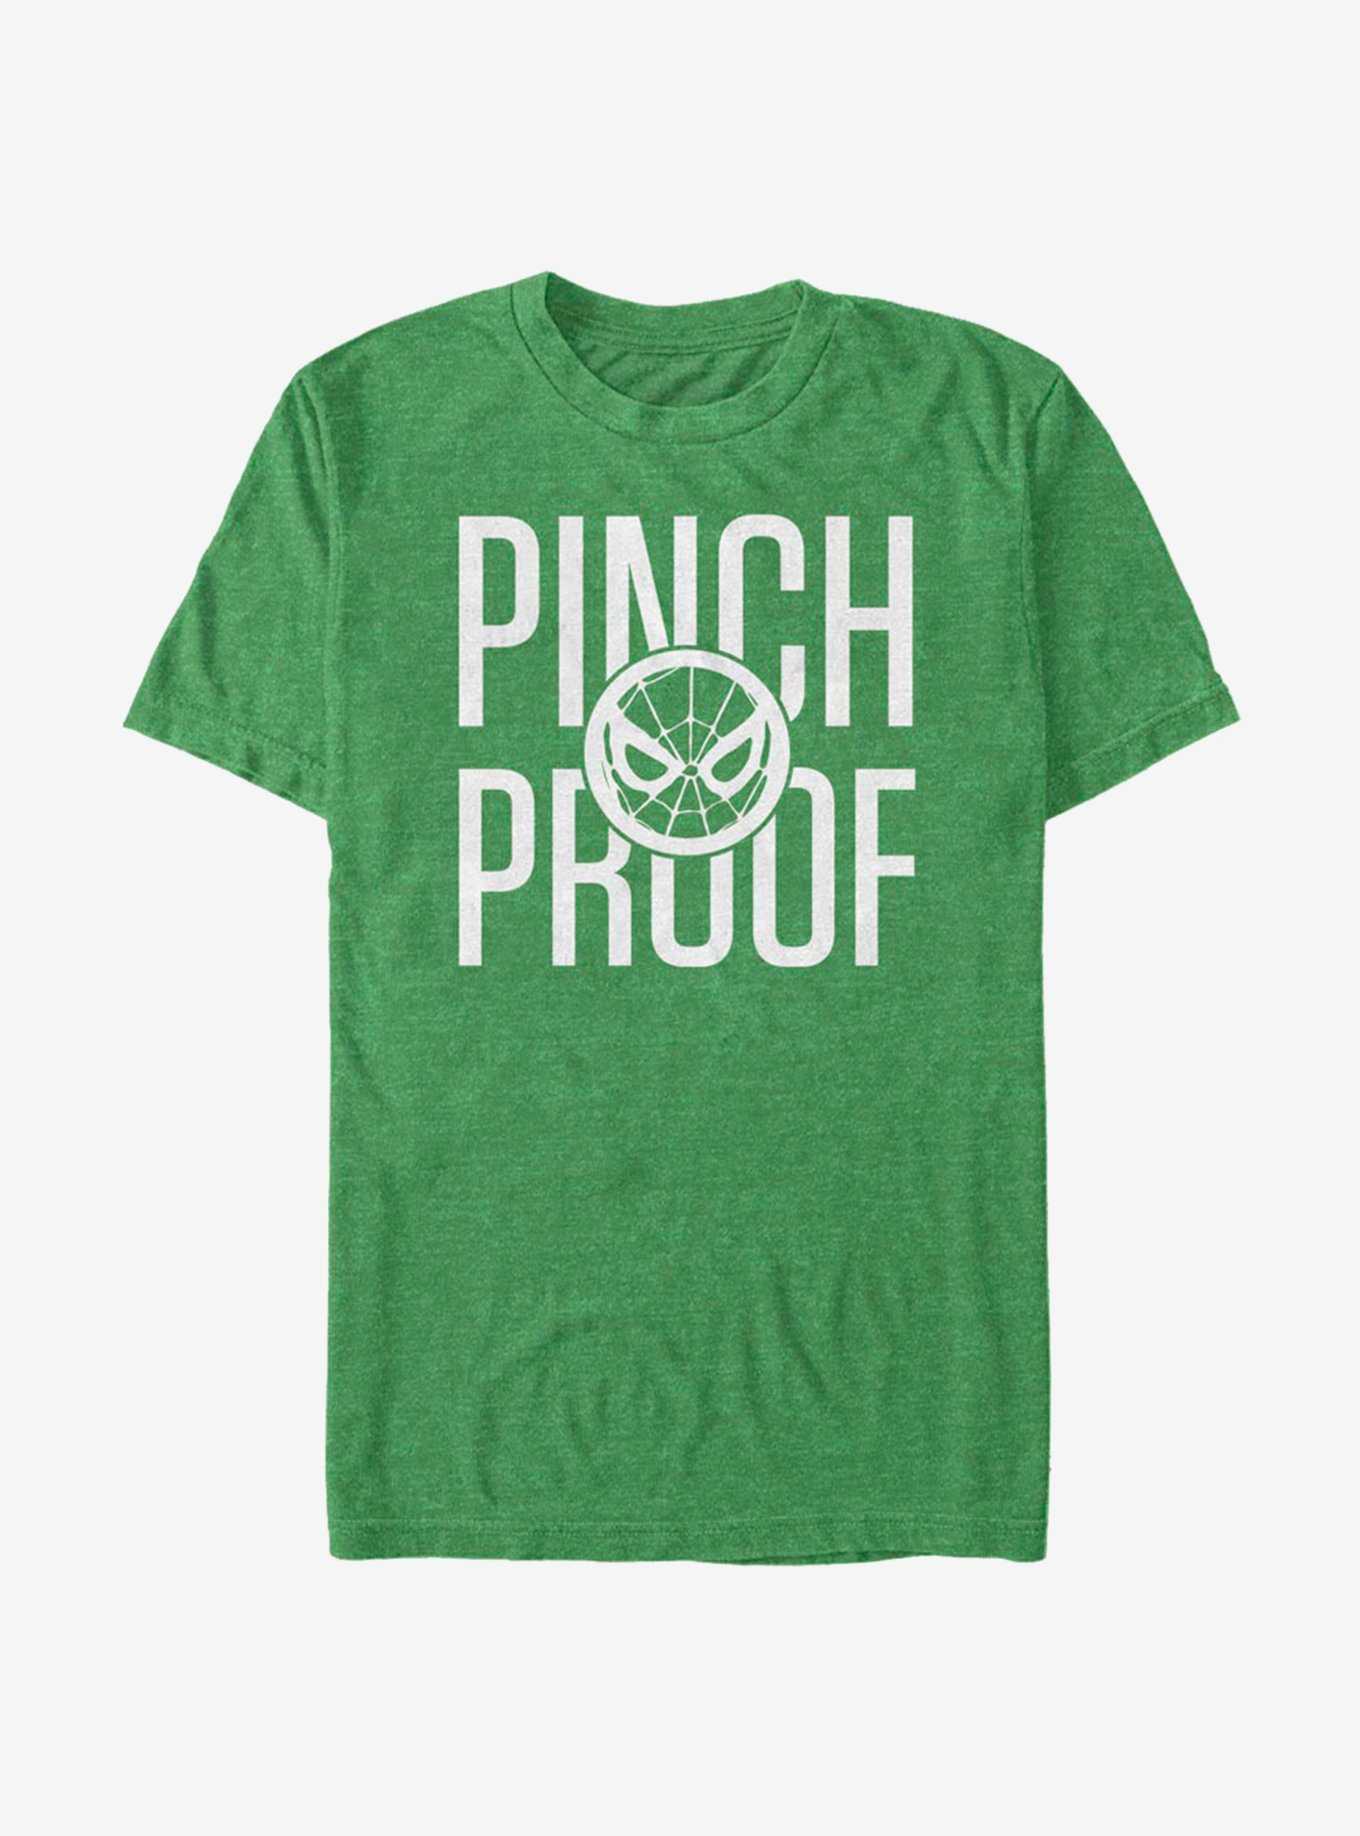 Marvel Spider-Man Spidey Pinch Proof  T-Shirt, , hi-res